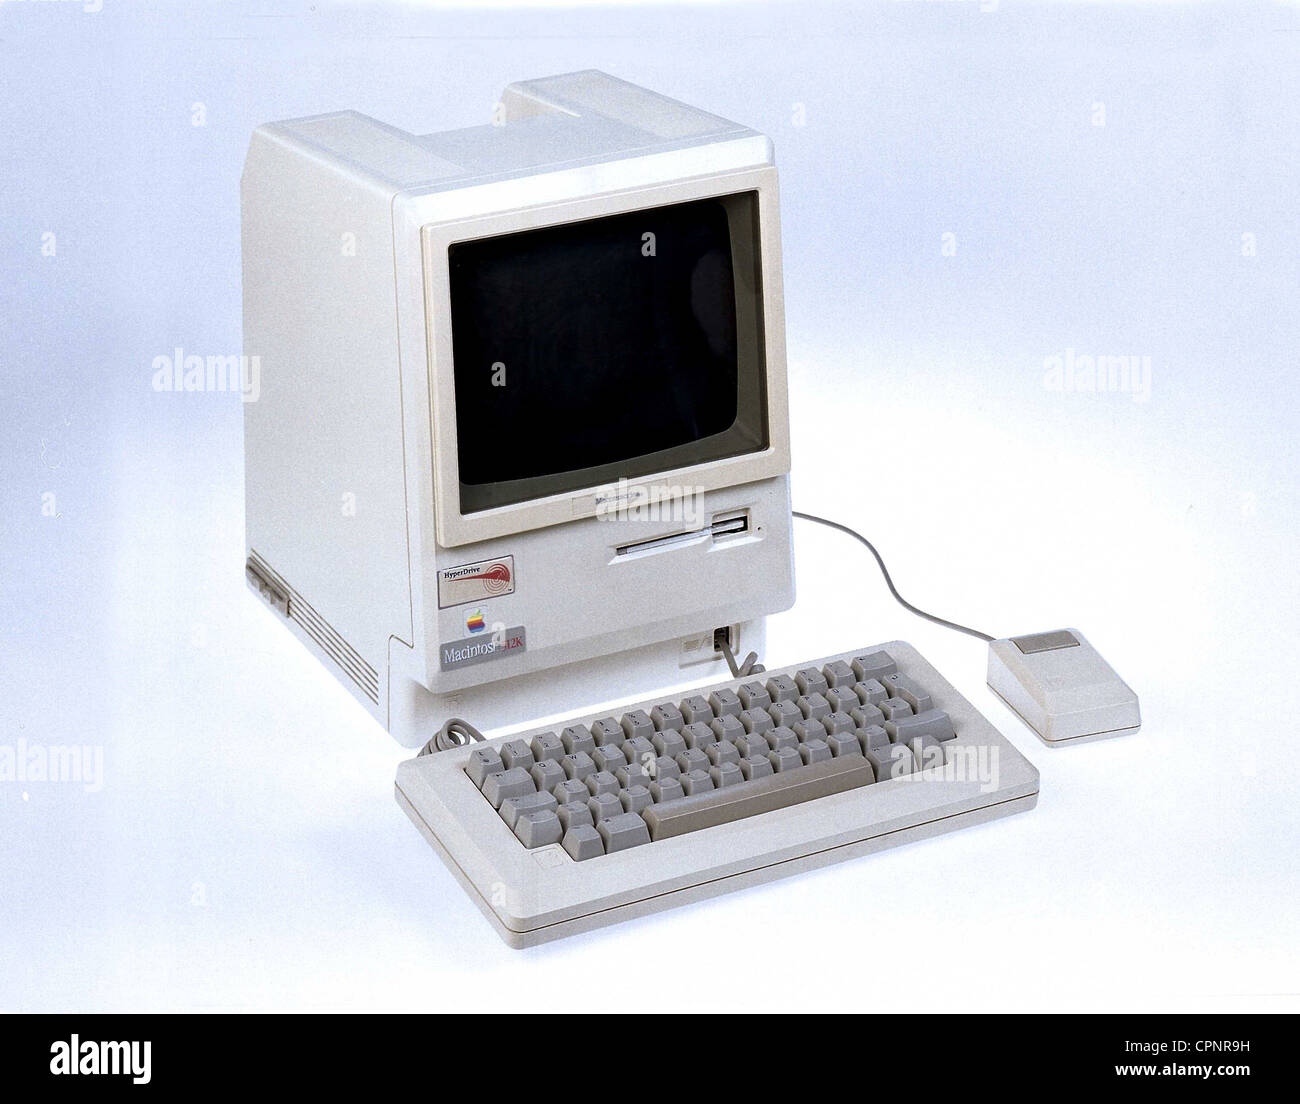 Informatique / électronique,ordinateur,Apple Macintosh 512k,avec moniteur BW 3.5 pouces et lecteur de disquette 9 pouces,USA,1984,clavier,claviers,souris d'ordinateur,clicker,souris,souris,souris,512 kilobyte mémoire à accès aléatoire,processeur Motorola 68000,8 megahertz,prix original 1984: 3.195 dollar,design,classique,surnom: Apple Mac,80s,Mac cube,ordinateur personnel,ordinateur,informatique,logiciel,informatique,informatique,informatique,développement,informatique,informatique,informatique,informatique,informatique,informatique,informatique,informatique,informatique,informatique,informatique,informatique,informatique,informatique M. Weber Collection,EDP,IT,STILL,studio shot,matériel,électronique grand public,ordinateur personnel,unité compacte,compa,droits supplémentaires-Clearences-non disponible Banque D'Images